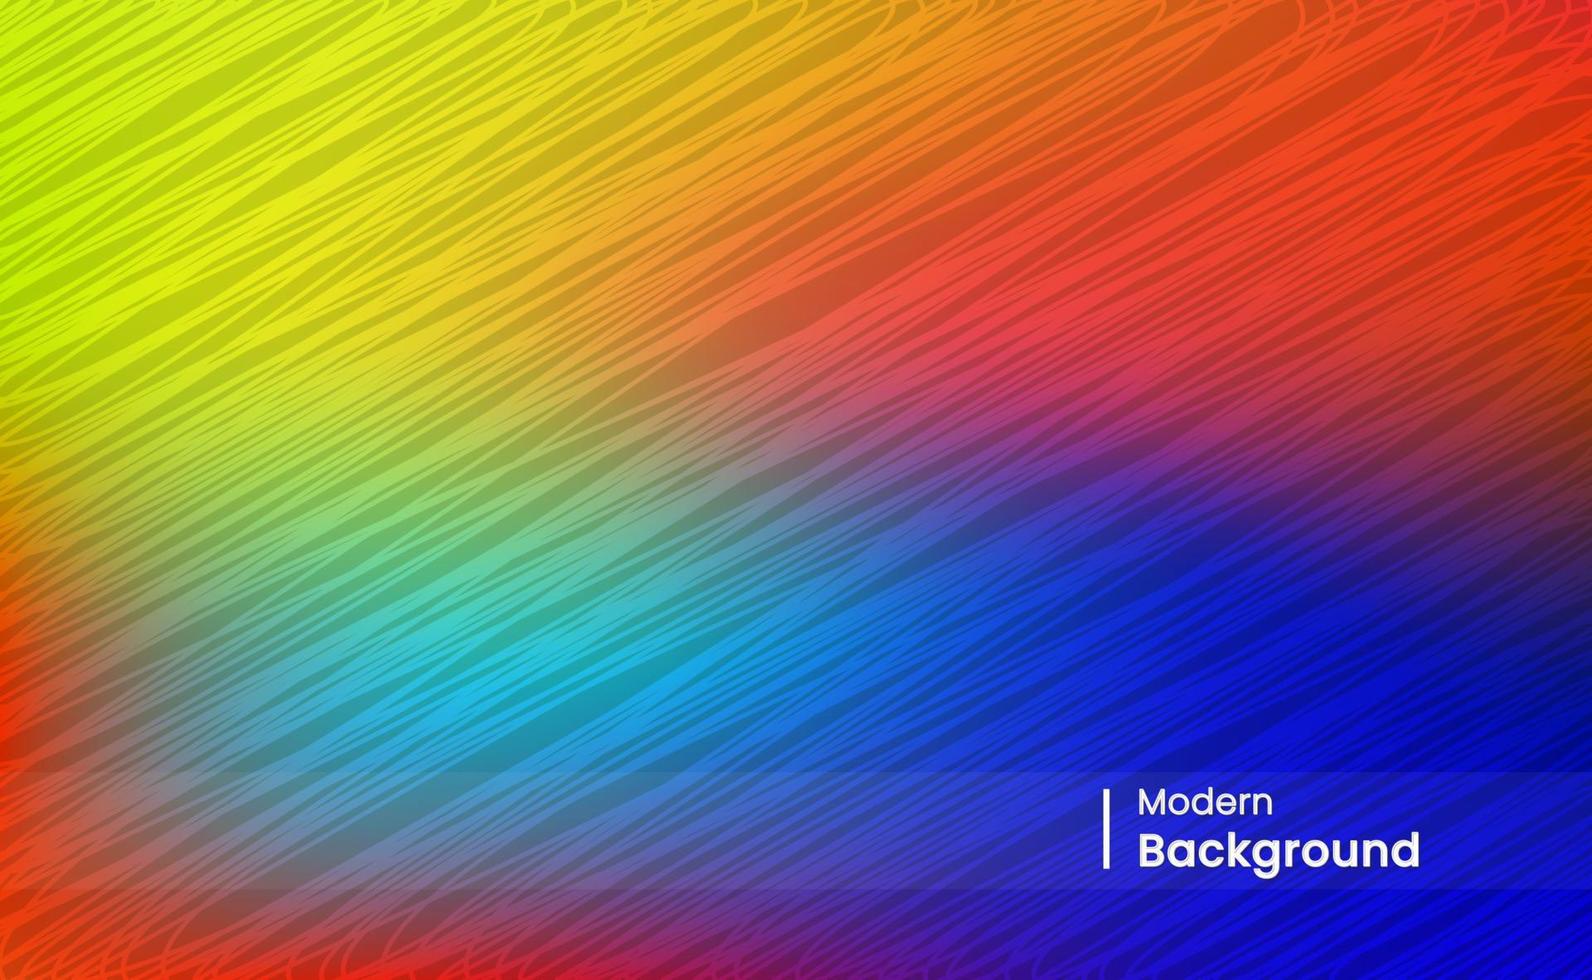 vector fundo de textura gradiente moderno com cores luxuosas e minimalistas, adequado para exibições na web, jogos, banners de eventos, fundos promocionais, capas e muito mais.